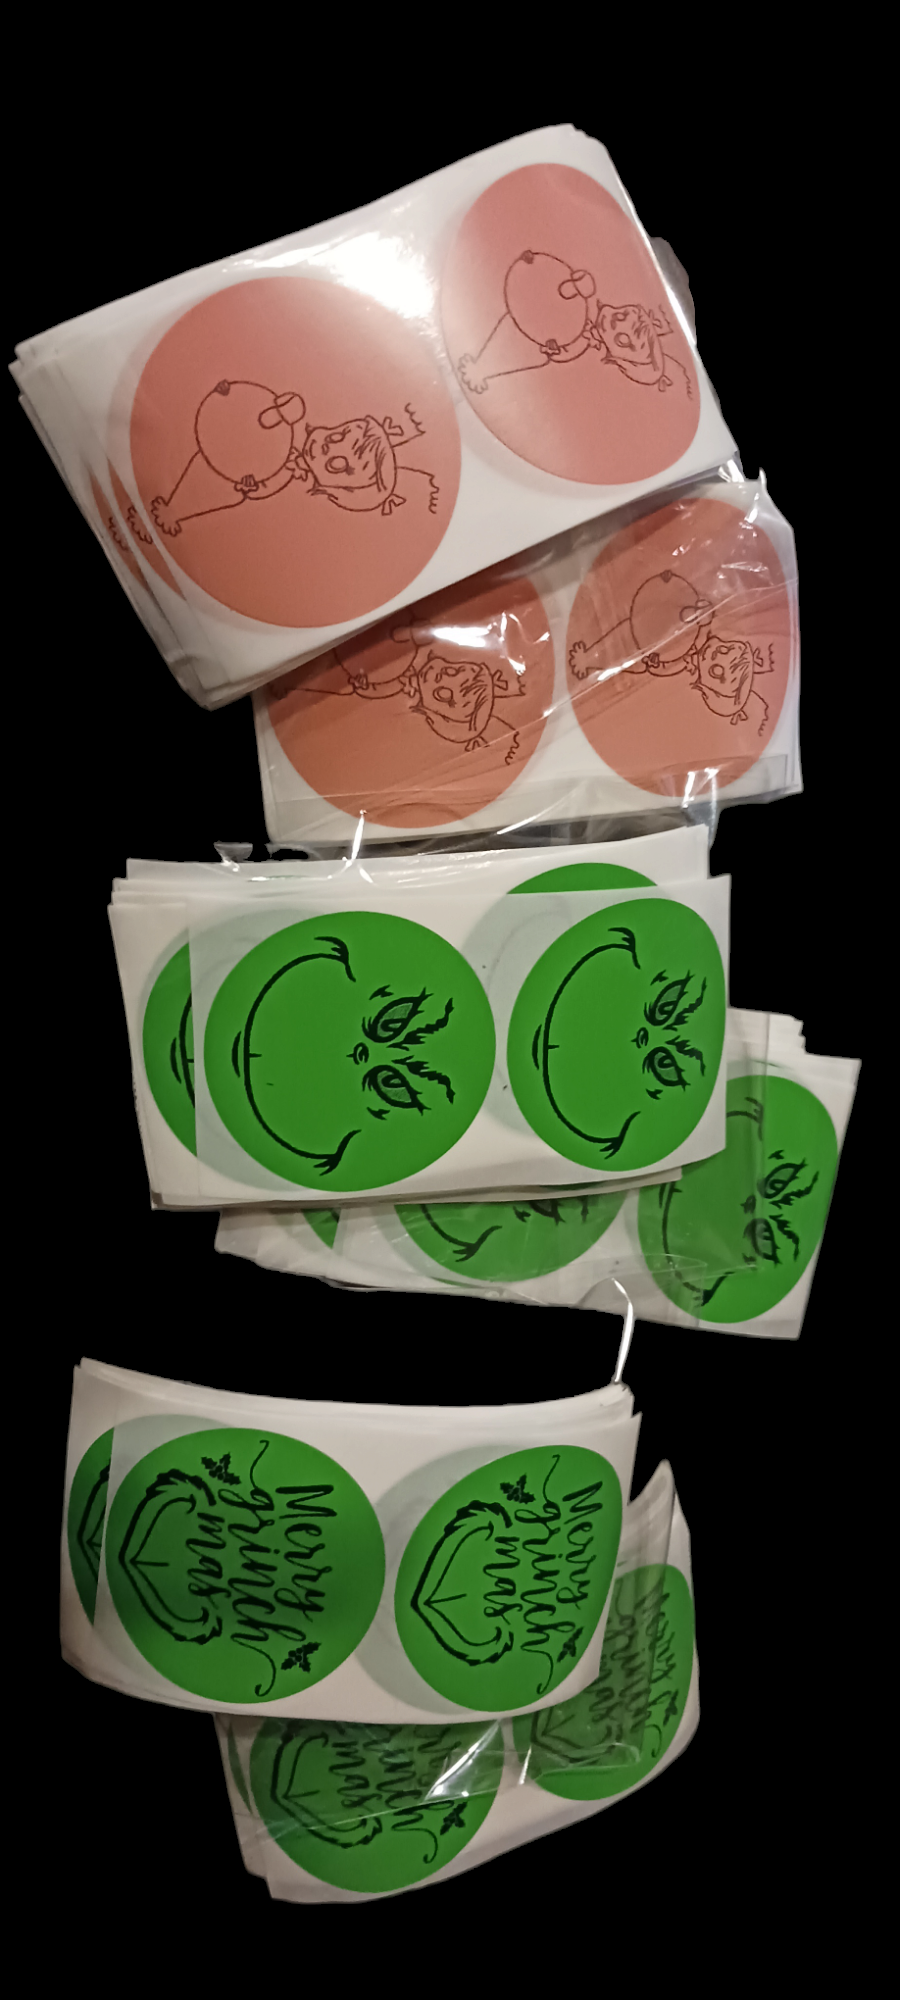 Green guy sticker packs of 50